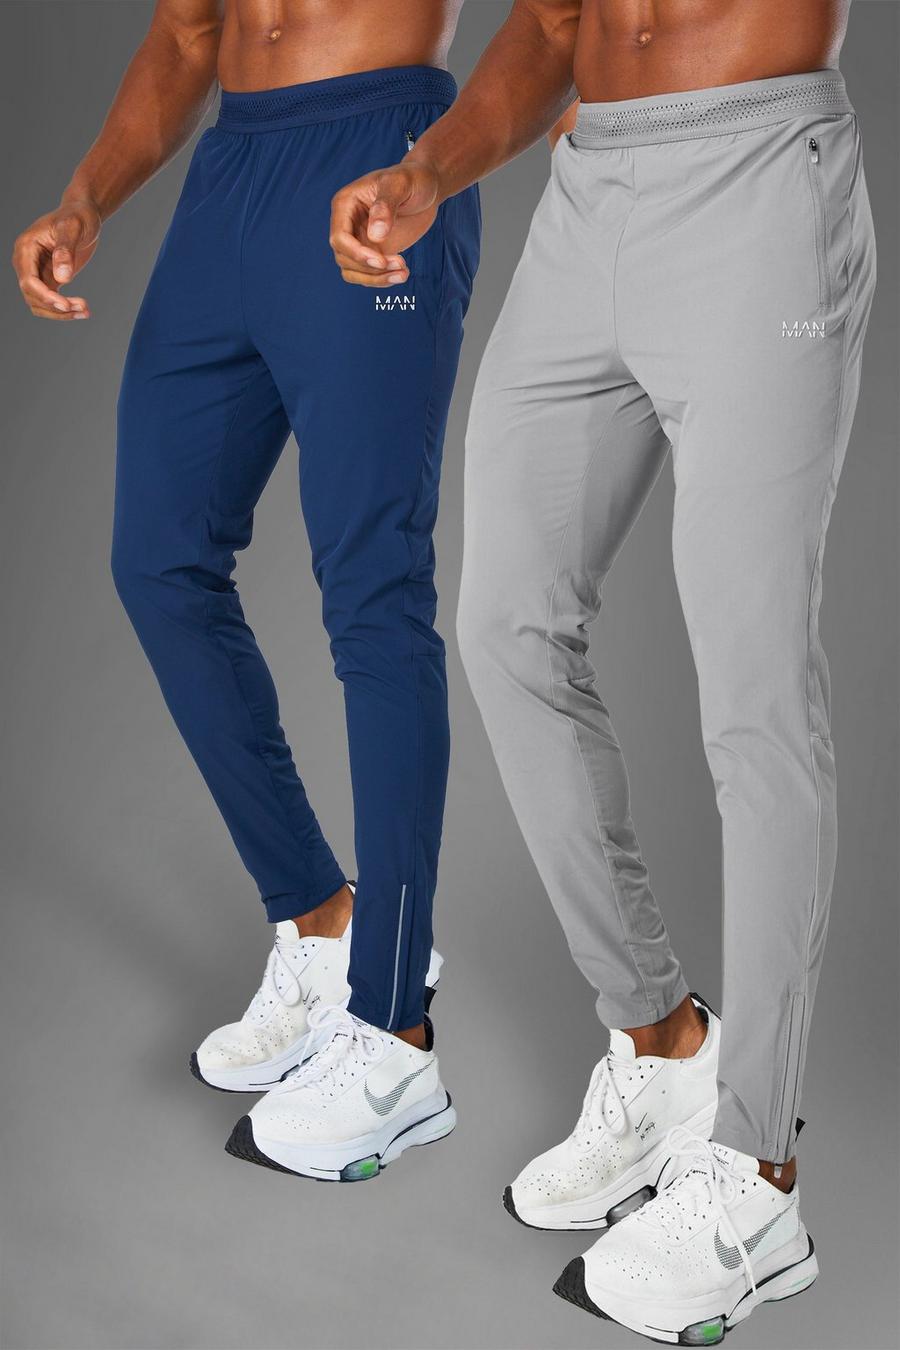 אפור בהיר מארז 2 זוגות מכנסי ריצה ספורטיביים קלים לחדר הכושר Man image number 1